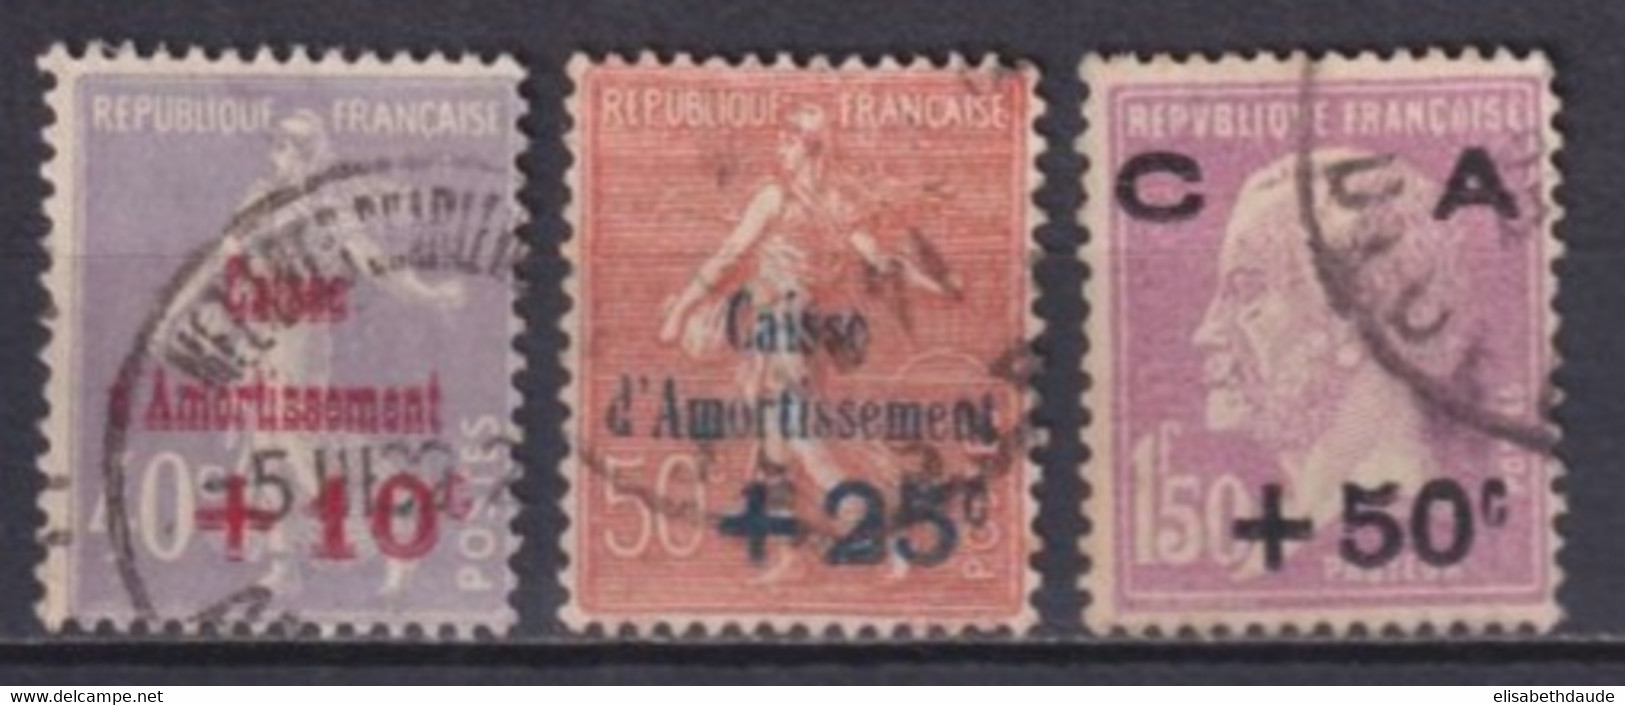 1928 - SERIE COMPLETE YVERT N° 248/250 OBLITERES !  - COTE = 85 EUR. - CAISSE AMORTISSEMENT - 1927-31 Caisse D'Amortissement